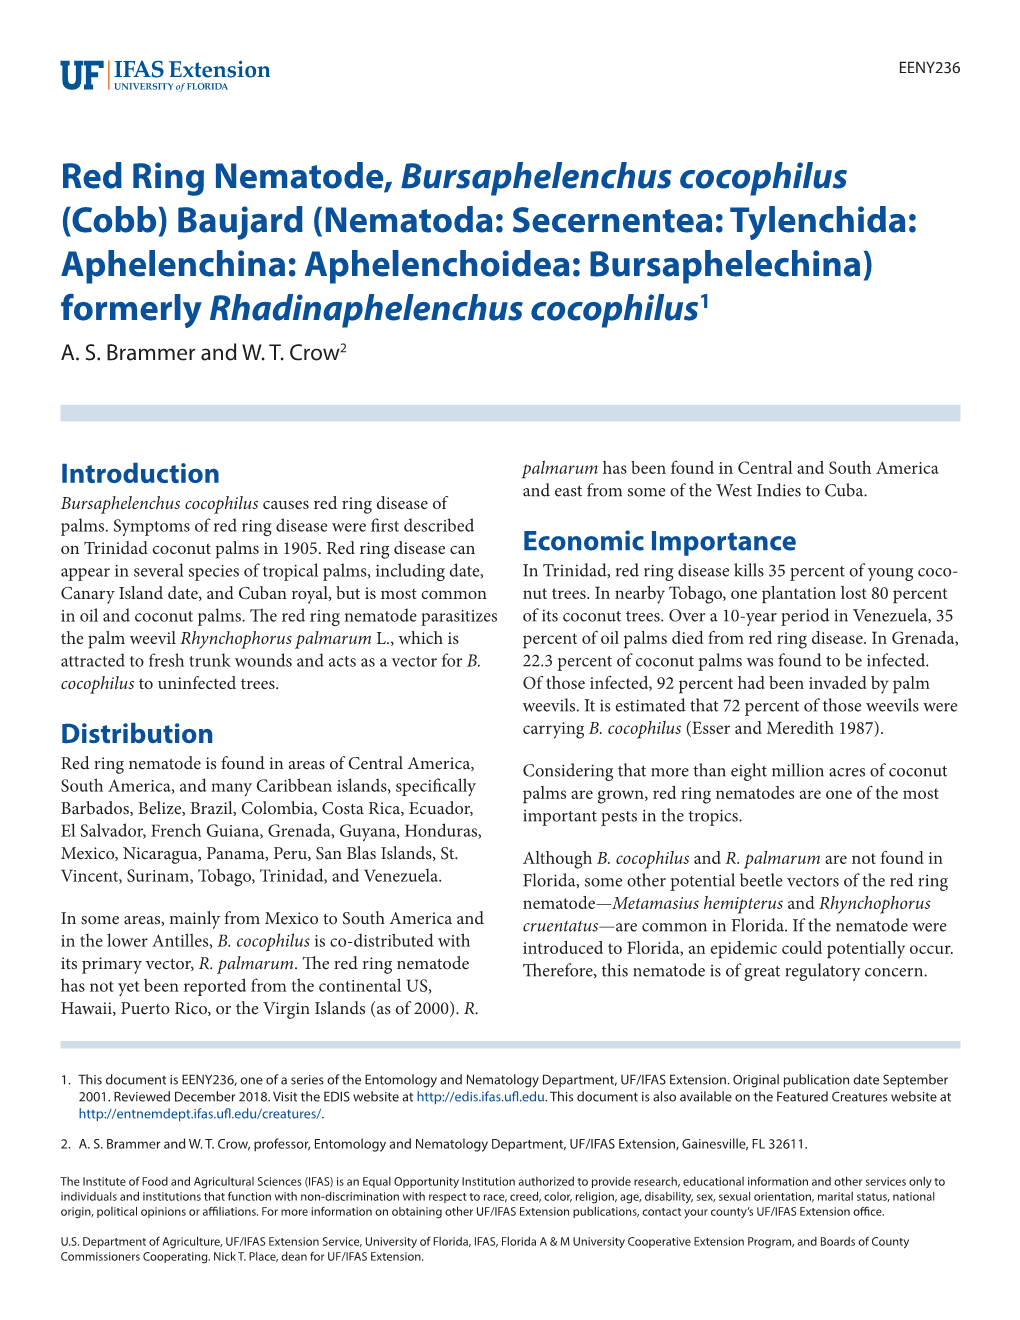 Red Ring Nematode, Bursaphelenchus Cocophilus (Cobb